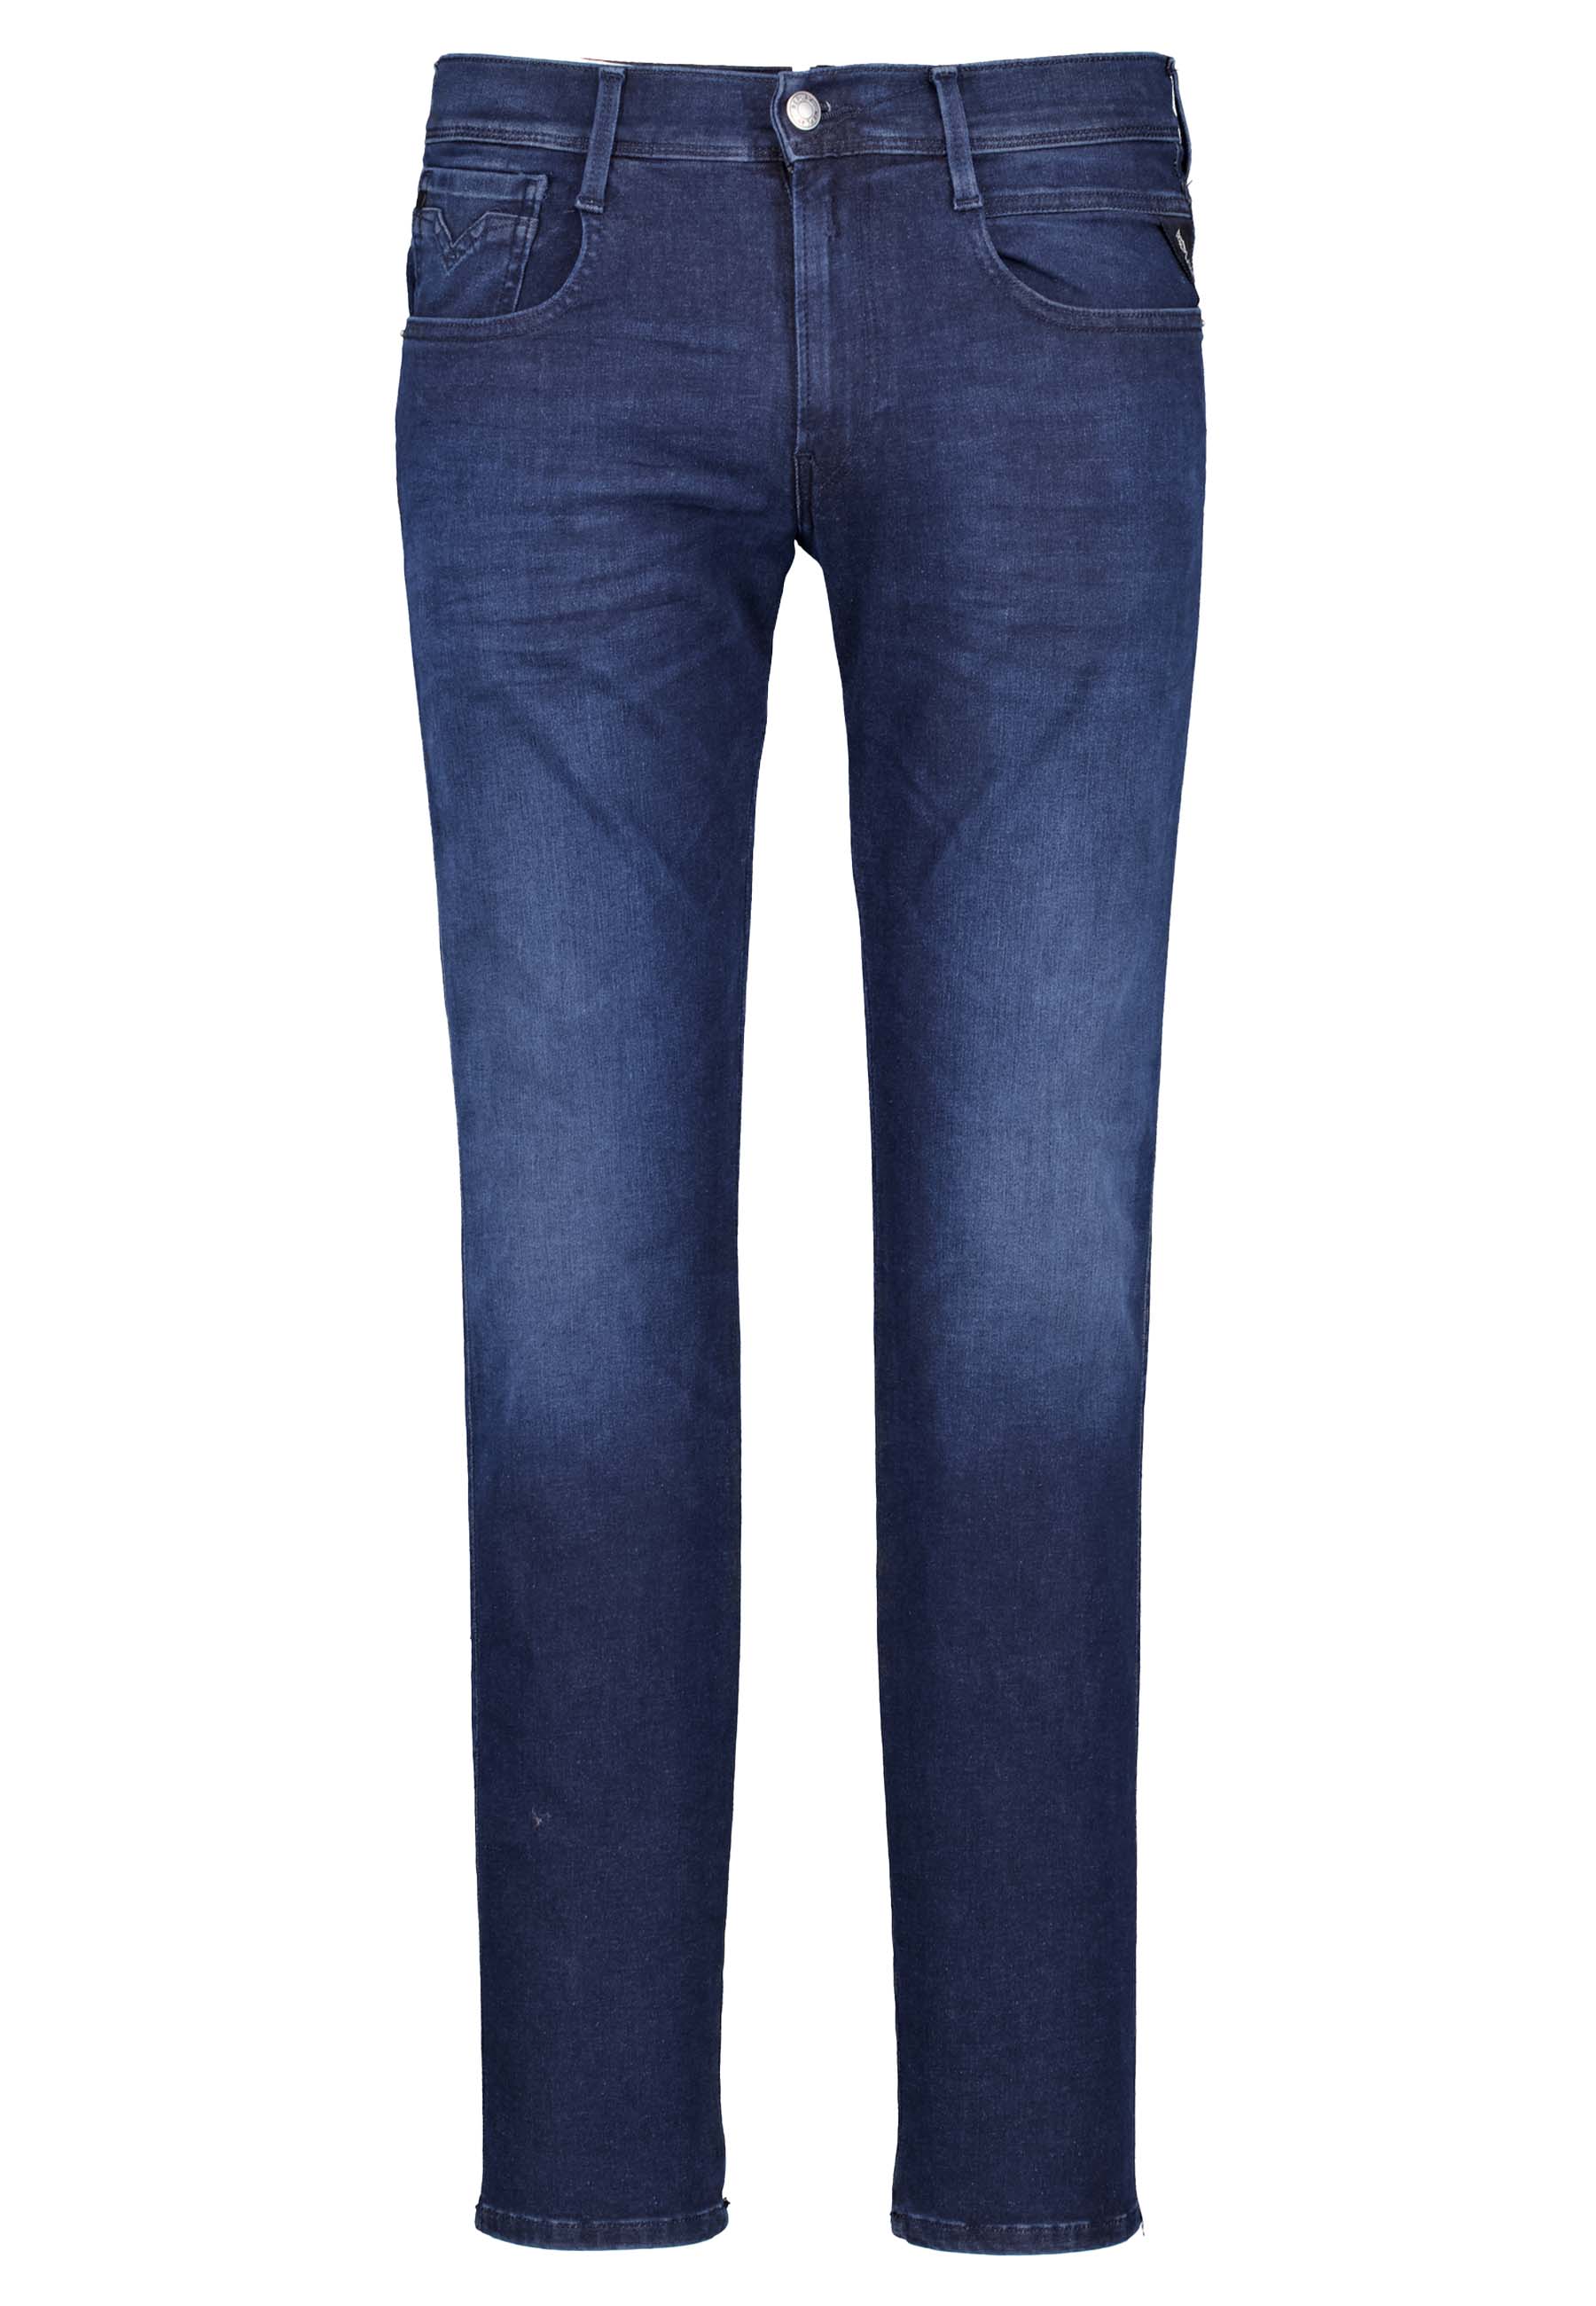 Replay jeans blauw Heren maat 33/32